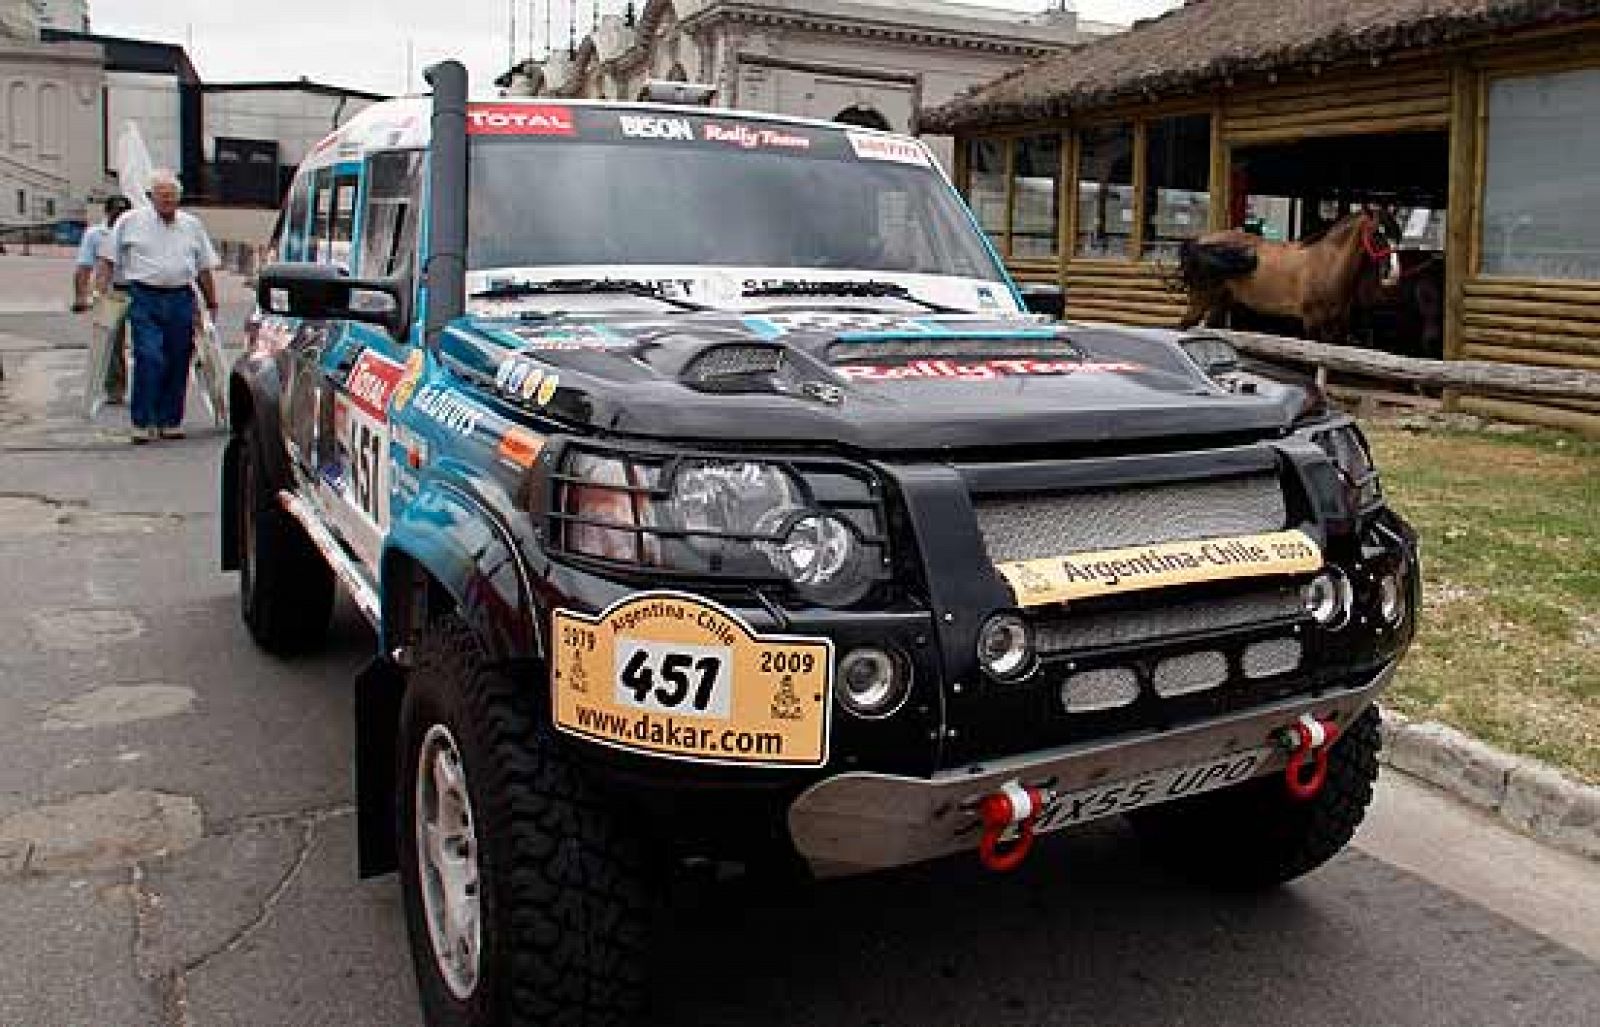 8.574 kilómetros esperan en el Dakar